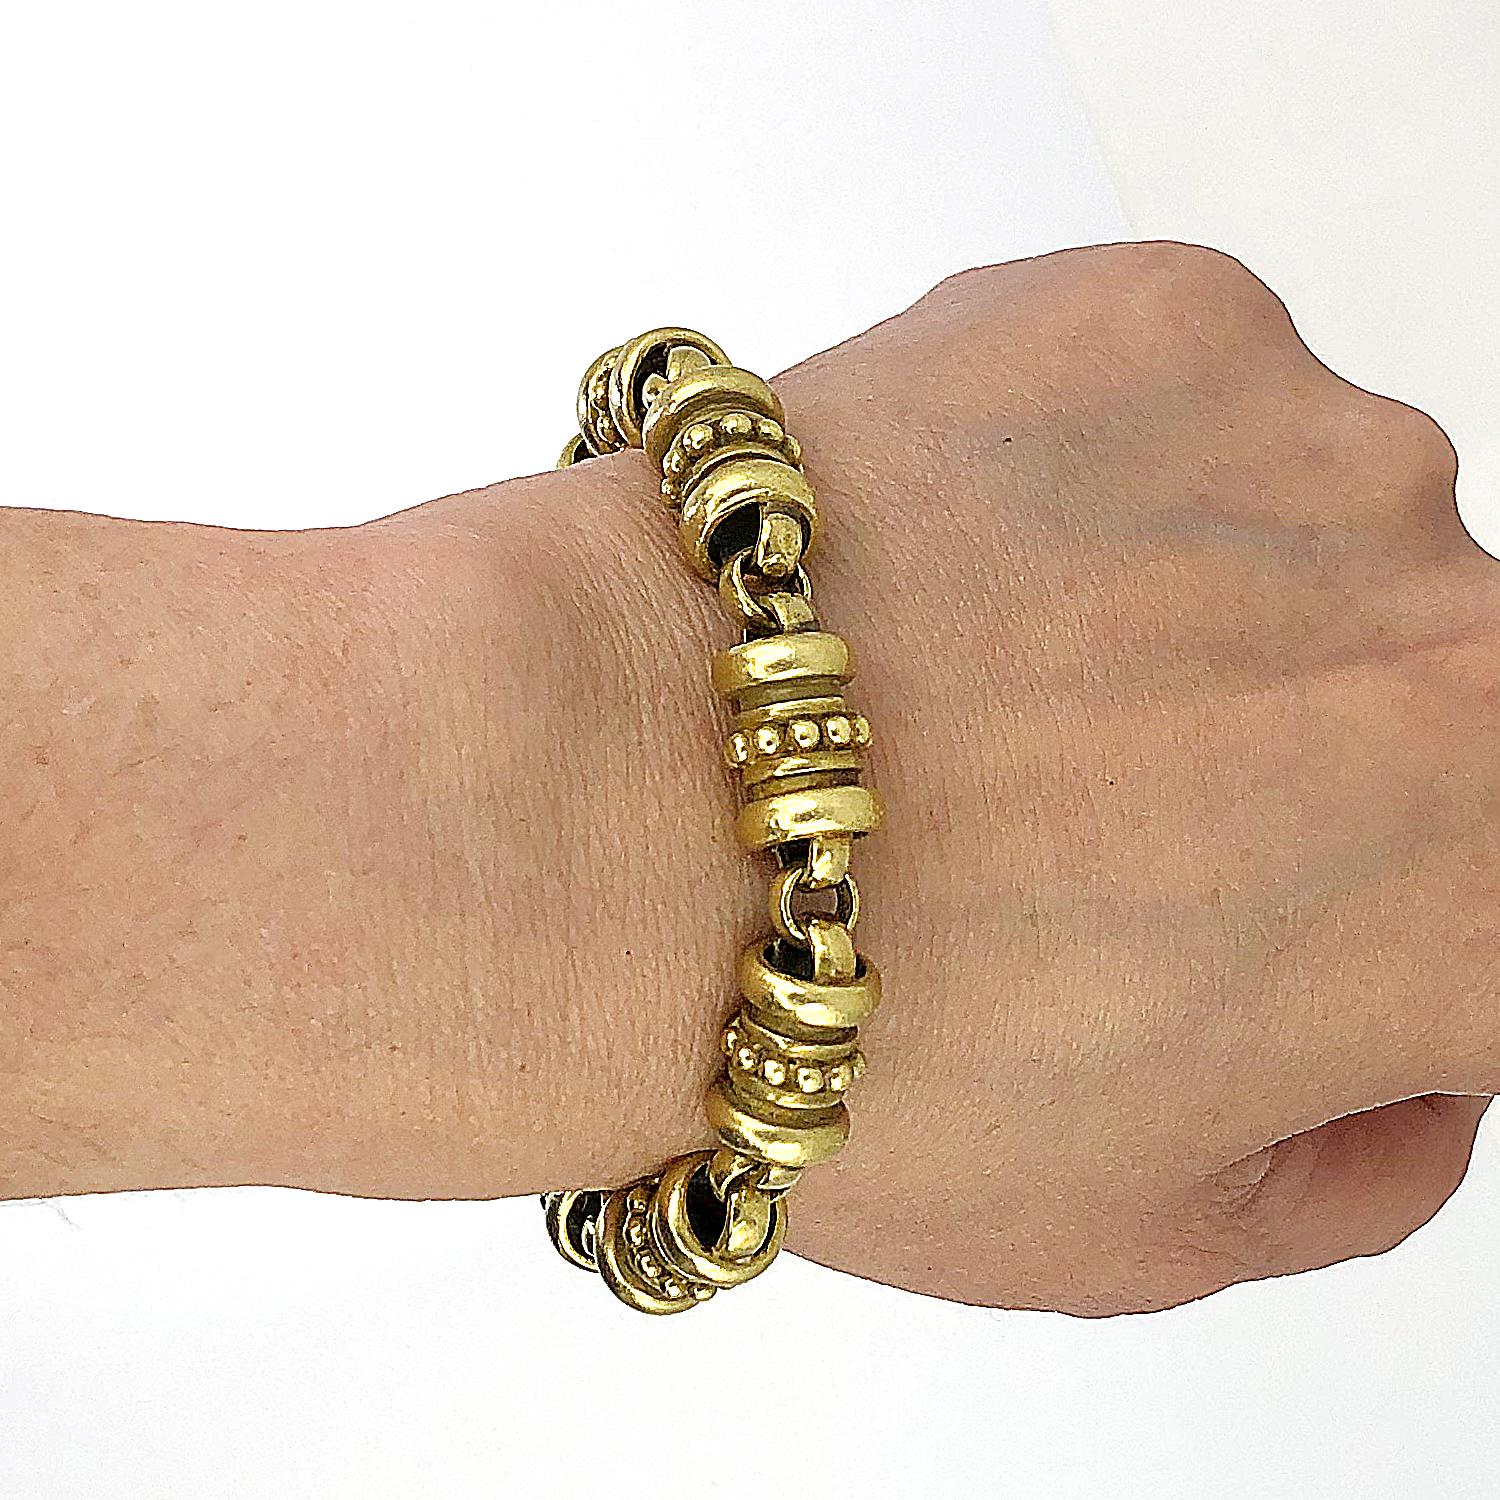 Barry Kieselstein -Cord Gold Spiral Bracelet
18K Yellow Gold Kieselstein Bracelet. Gold Weight: 47.69 dwt.
measures approximately 7.5″ in length by 0.42″ in width
